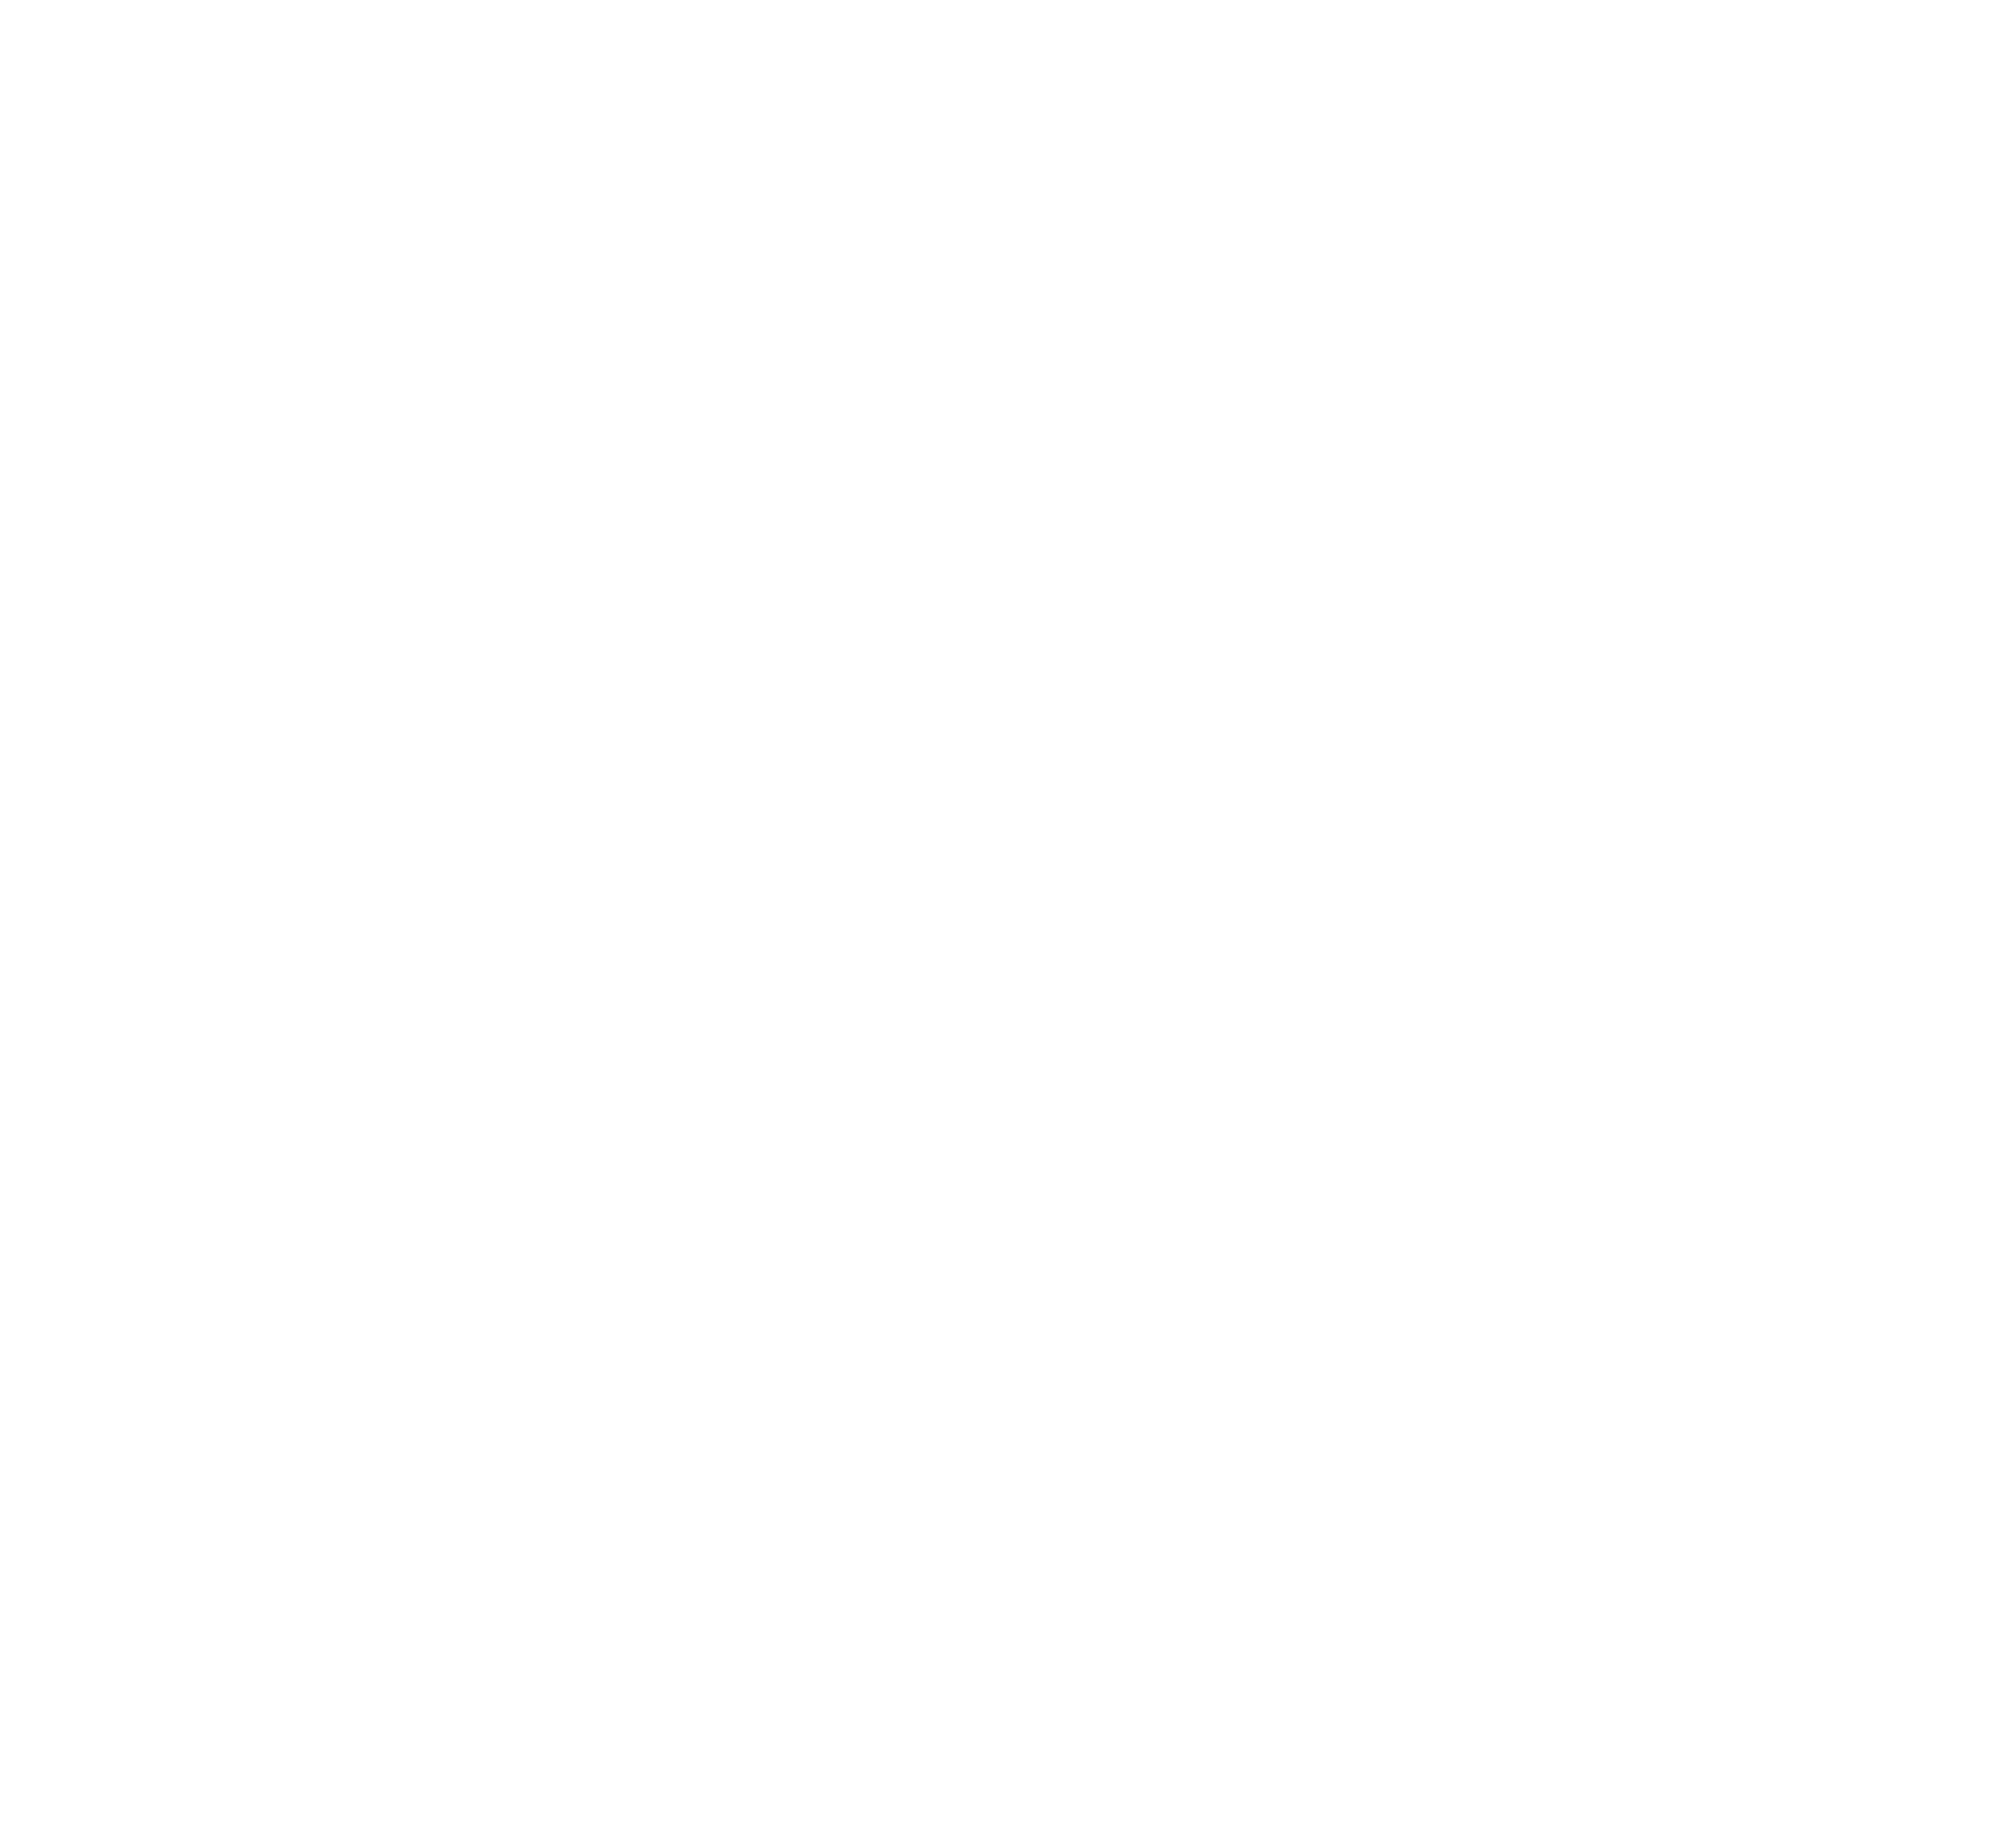 Delhi6 Indian Kitchen & Bar